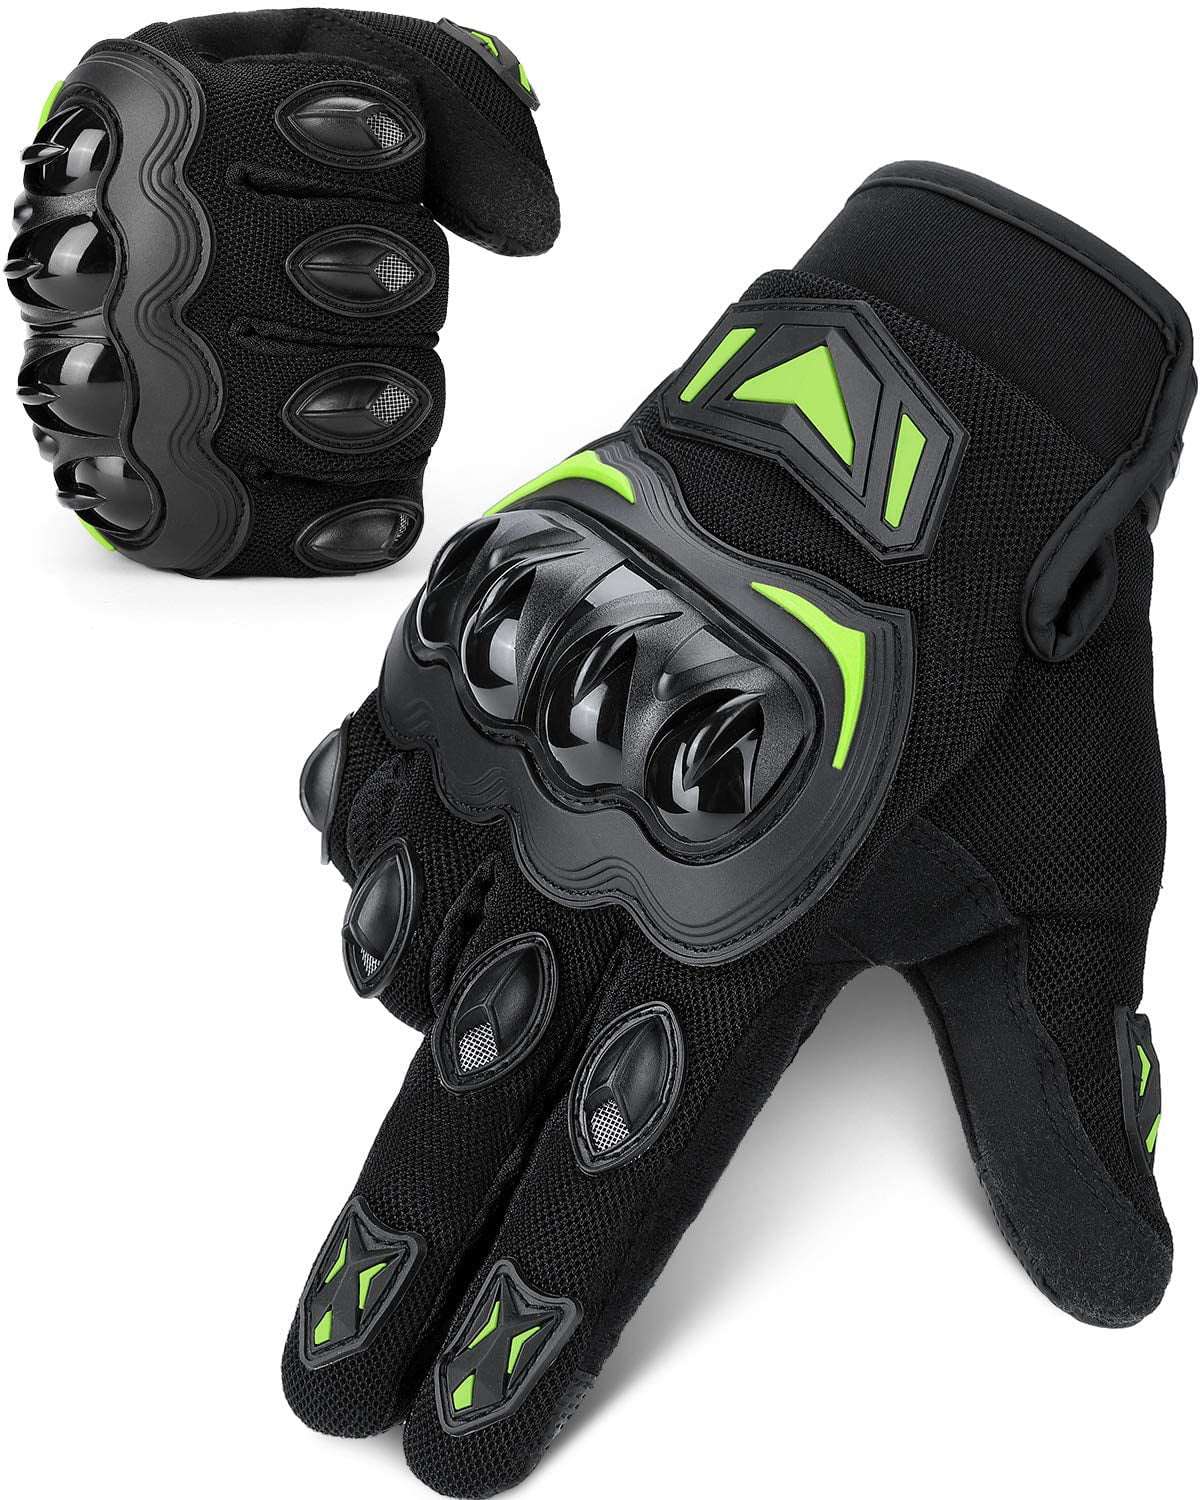 Full Finger Touchscreen Breathable Gloves for Racing Cycling Motocross Dirt Bike Gloves ATV Motorcycle MTB Riding for Men Women Black M 